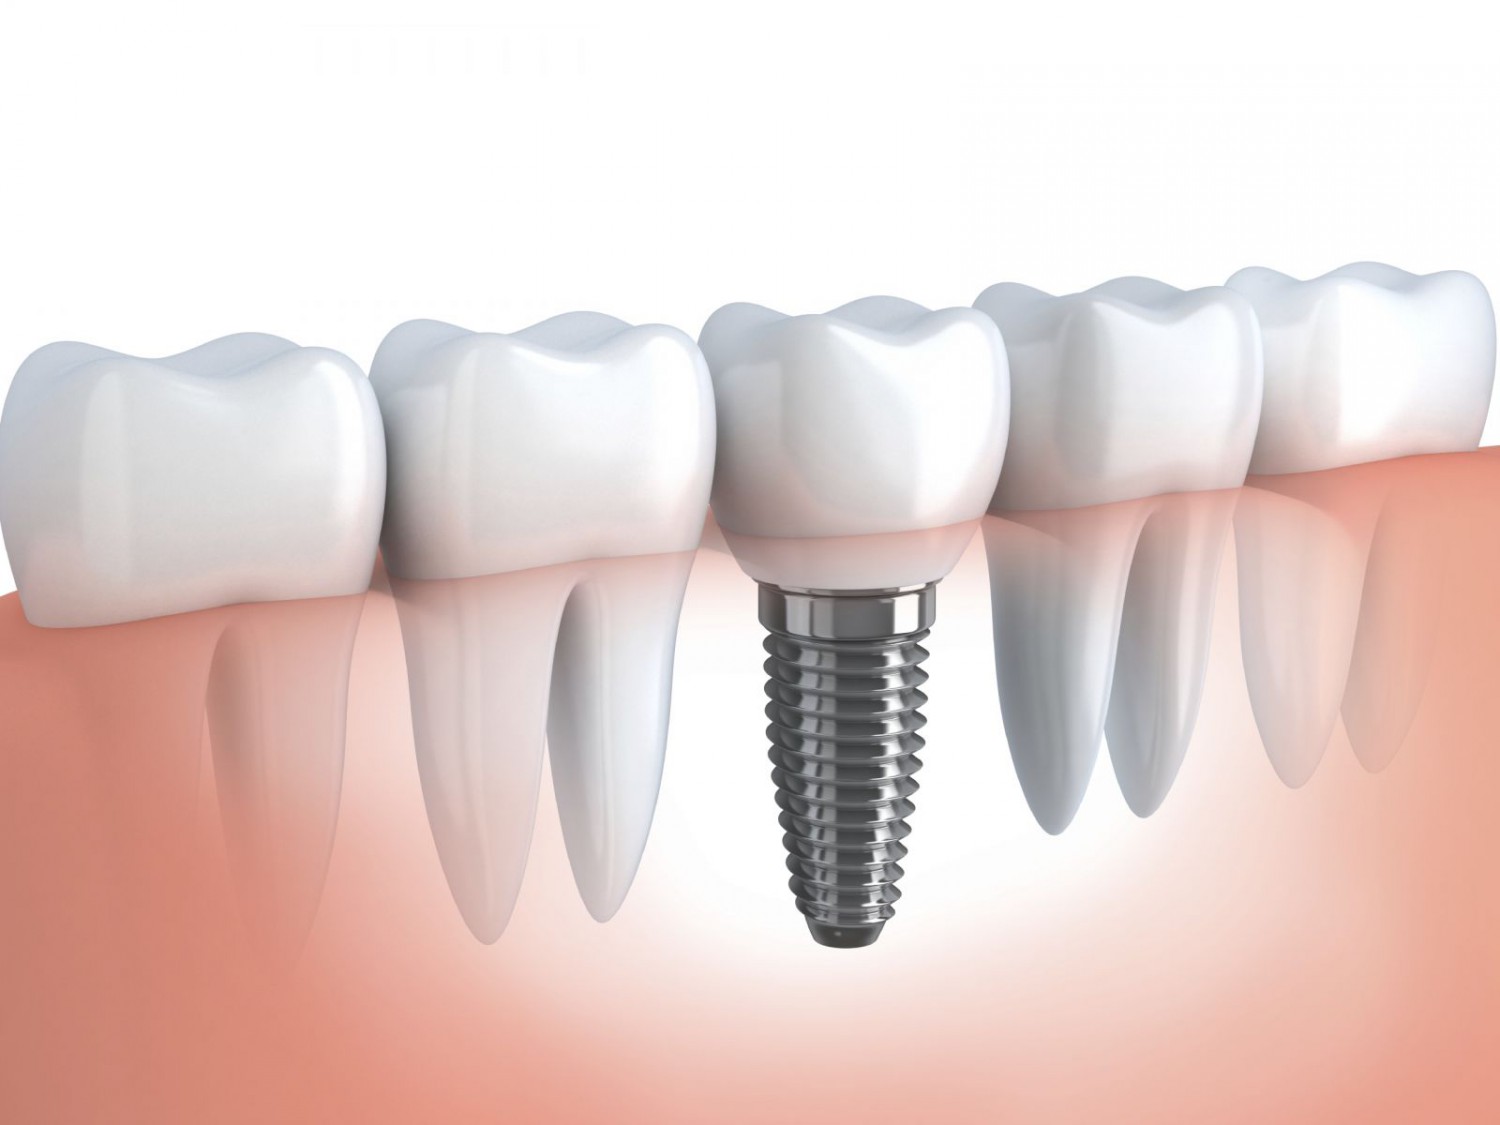 Mô hình răng cấy ghép Implant